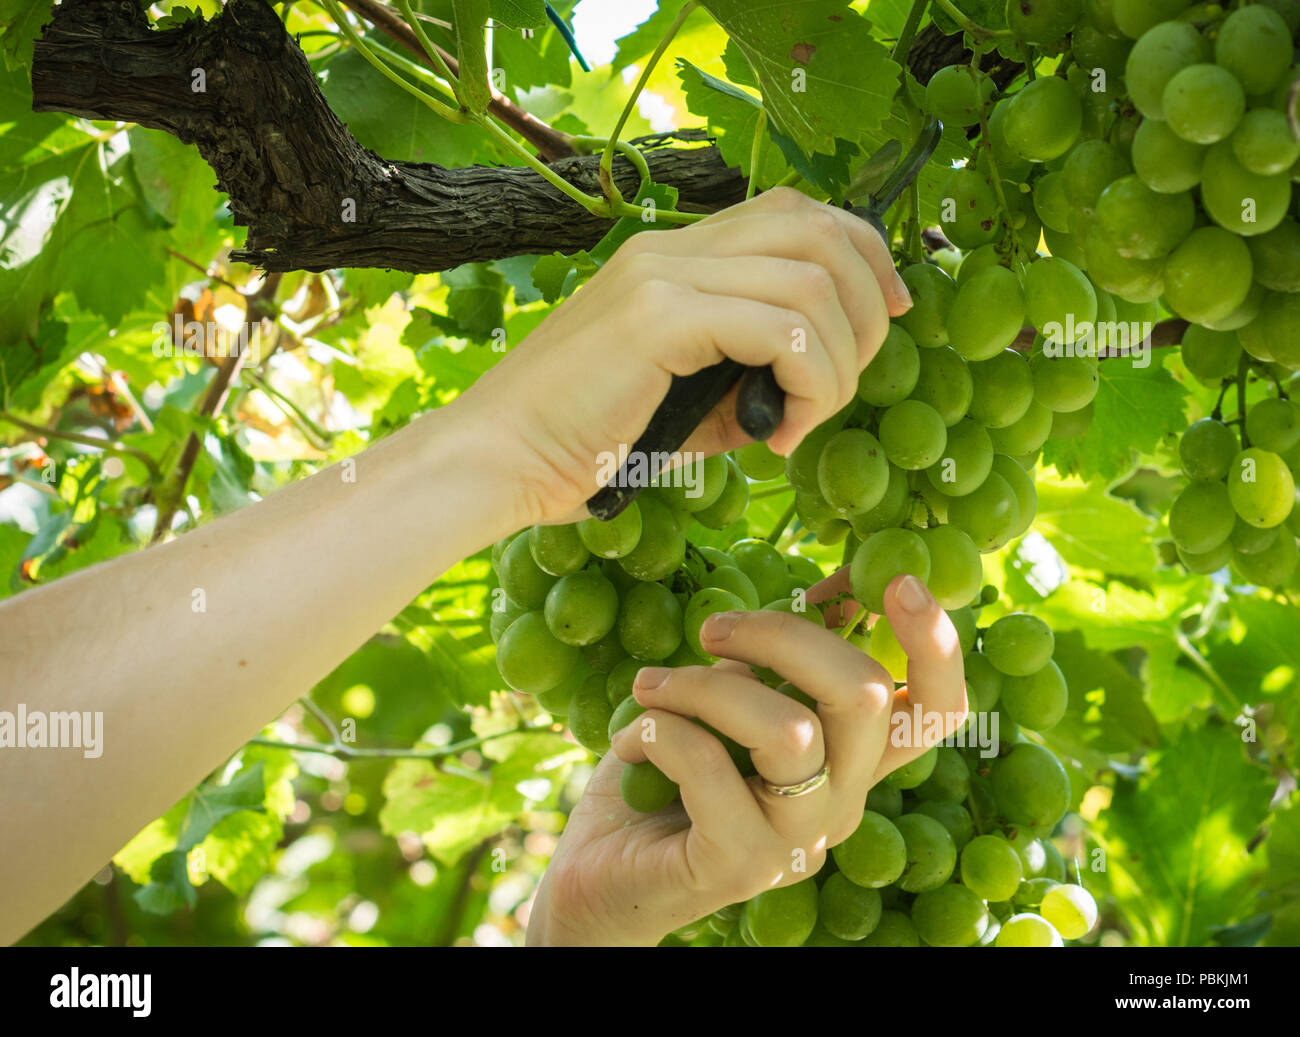 Worker's Hände Schneiden weißen Trauben von den Reben während der Weinlese im September. Trauben Ernte im italienischen Weinberg, Südtirol, Italien Stockfoto